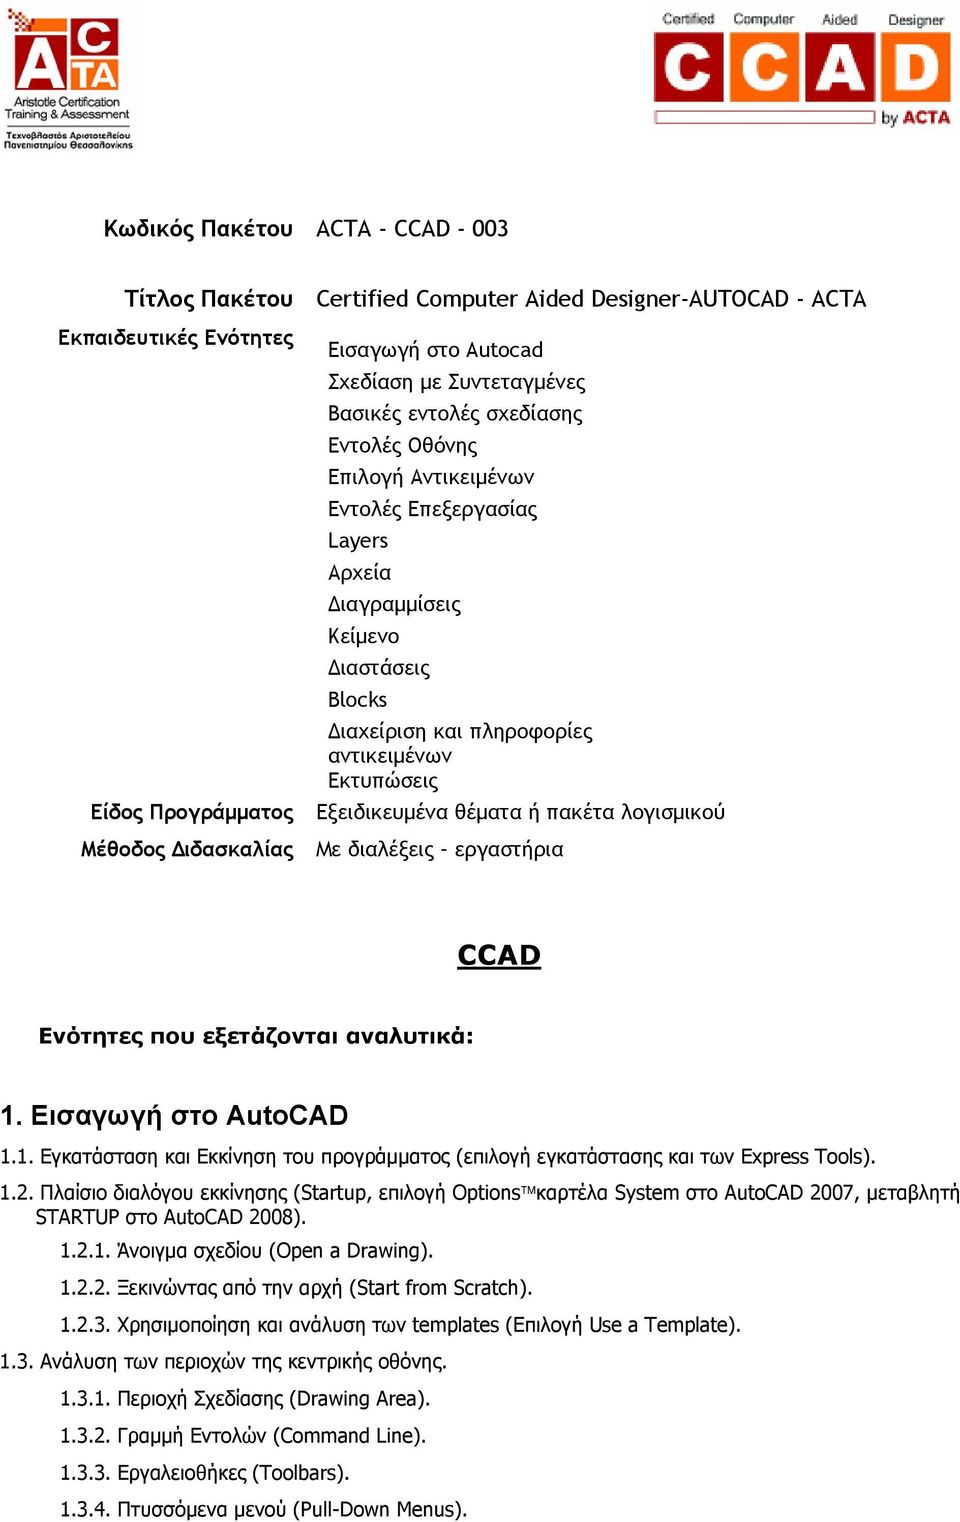 Εκτυπώσεις Εξειδικευμένα θέματα ή πακέτα λογισμικού Με διαλέξεις εργαστήρια CCAD Ενότητες που εξετάζονται αναλυτικά: 1.